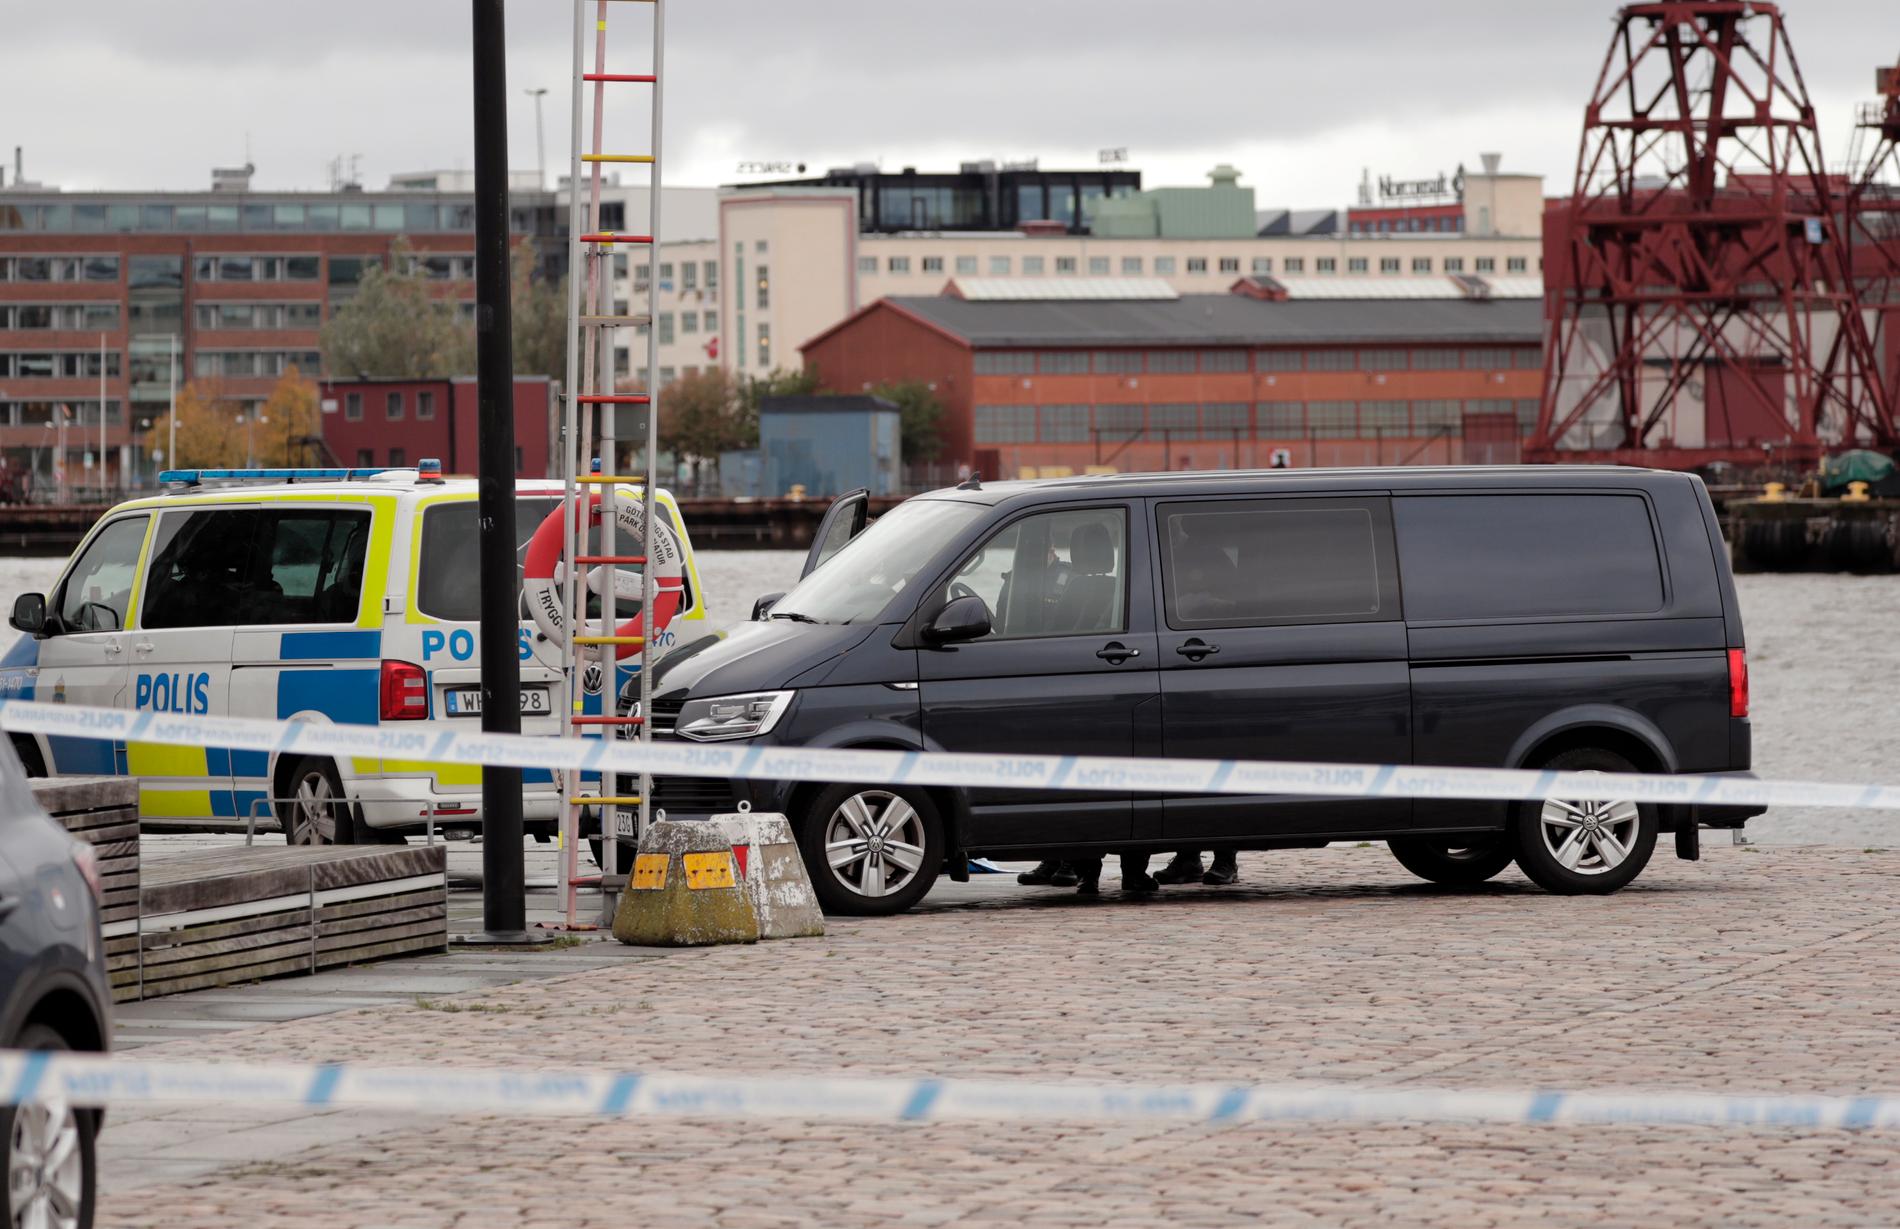 Mark Lorentzon, 55, har hittats död i vattnet vid Stenpiren, enligt uppgifter till Aftonbladet.